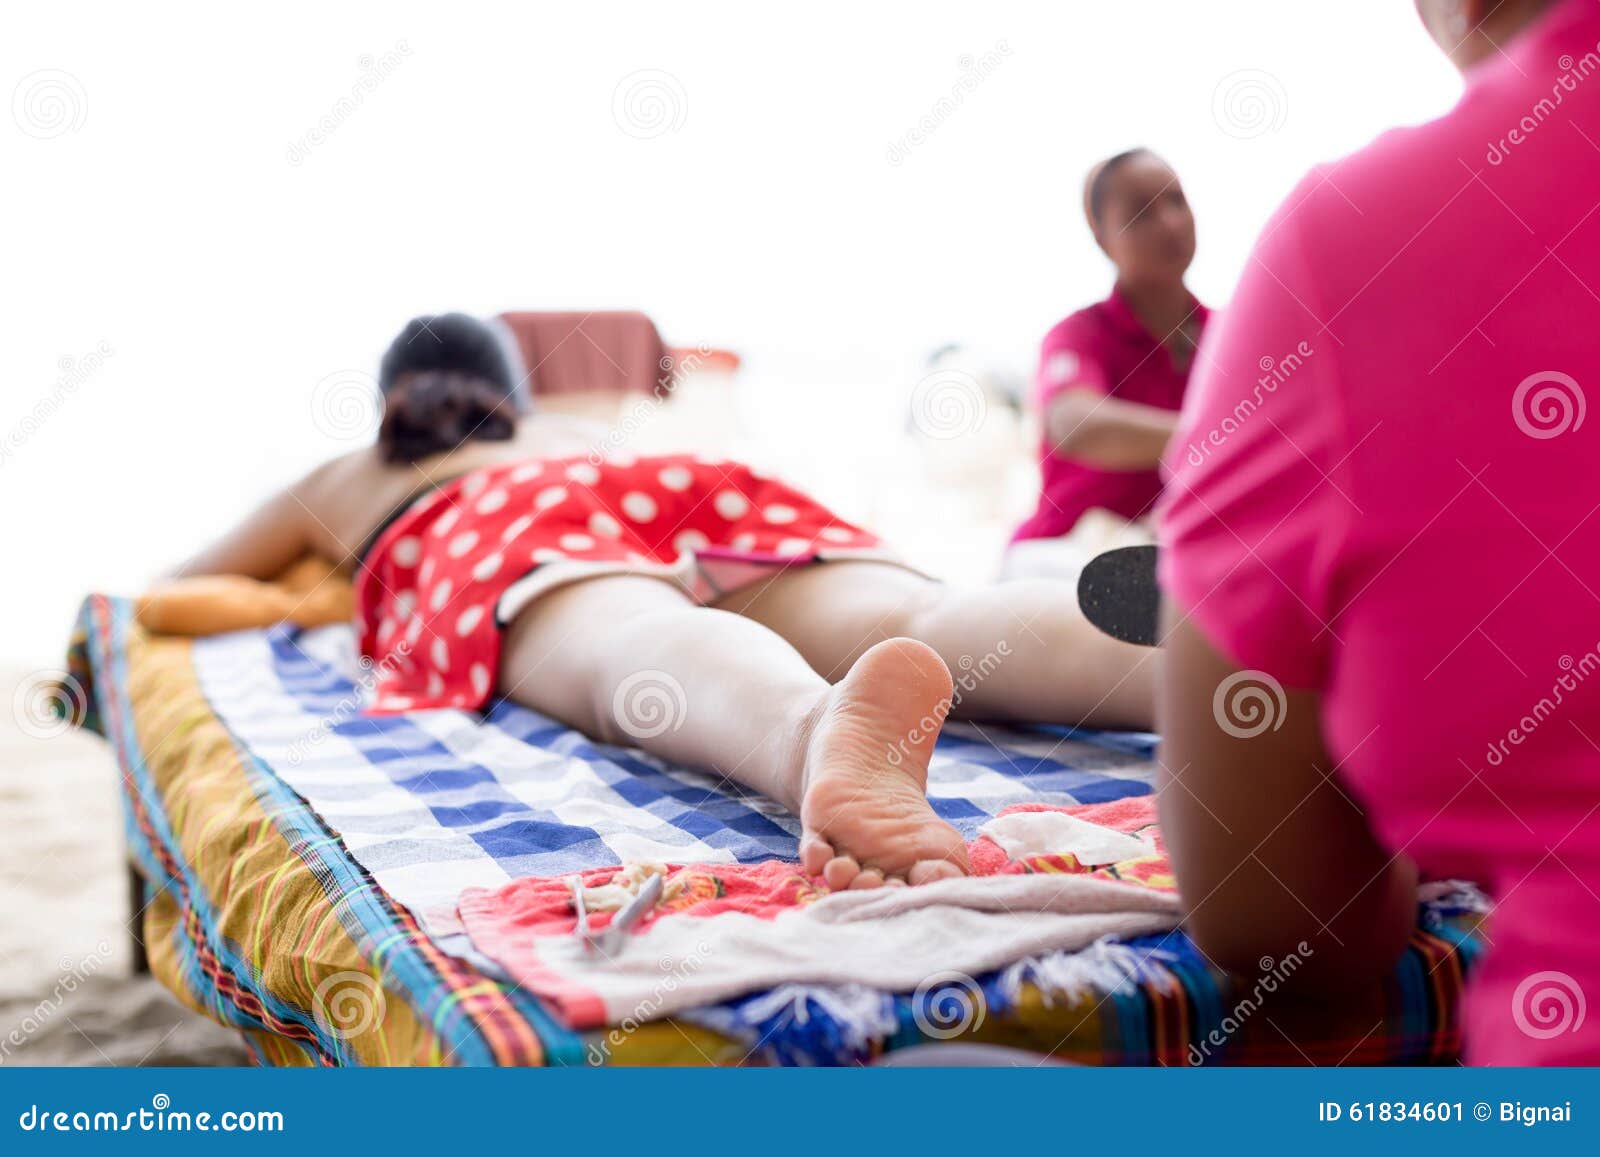 Делай маме массаж ног. Маме массаж ног на пляже. Дочь массирует маме ноги на пляже. Сын массирует мамы и ноги на пляже. Сын делает маме массаж на пляже.